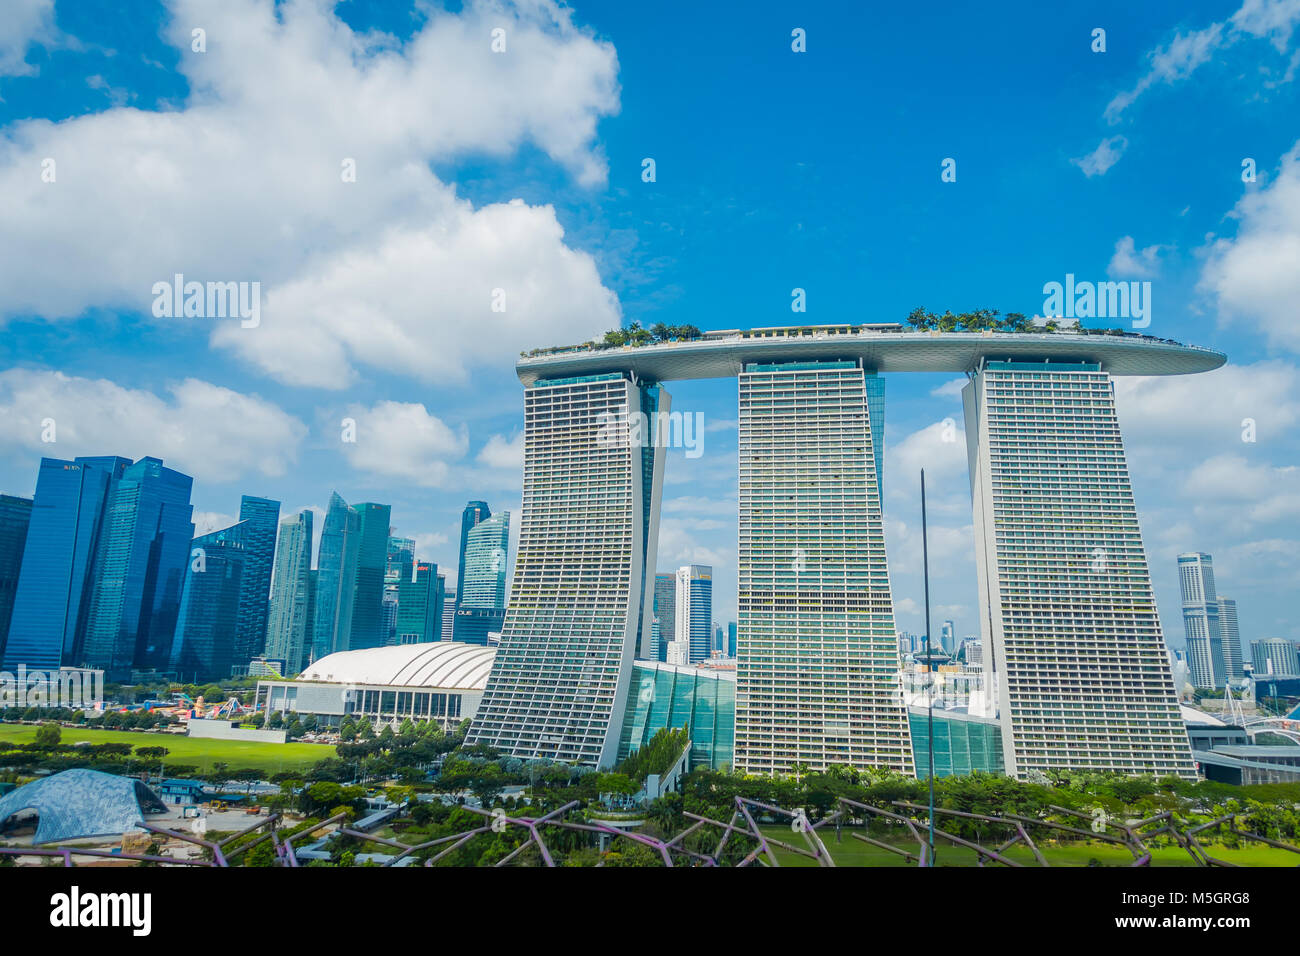 SINGAPORE, Singapore - 30 gennaio 2018: bellissimo paesaggio delle tre torri della Marina Bay Sands Ressort contro un cielo nuvoloso, i mondi più costoso casino standalone al momento dell'apertura, nel 2010, a Singapore Foto Stock